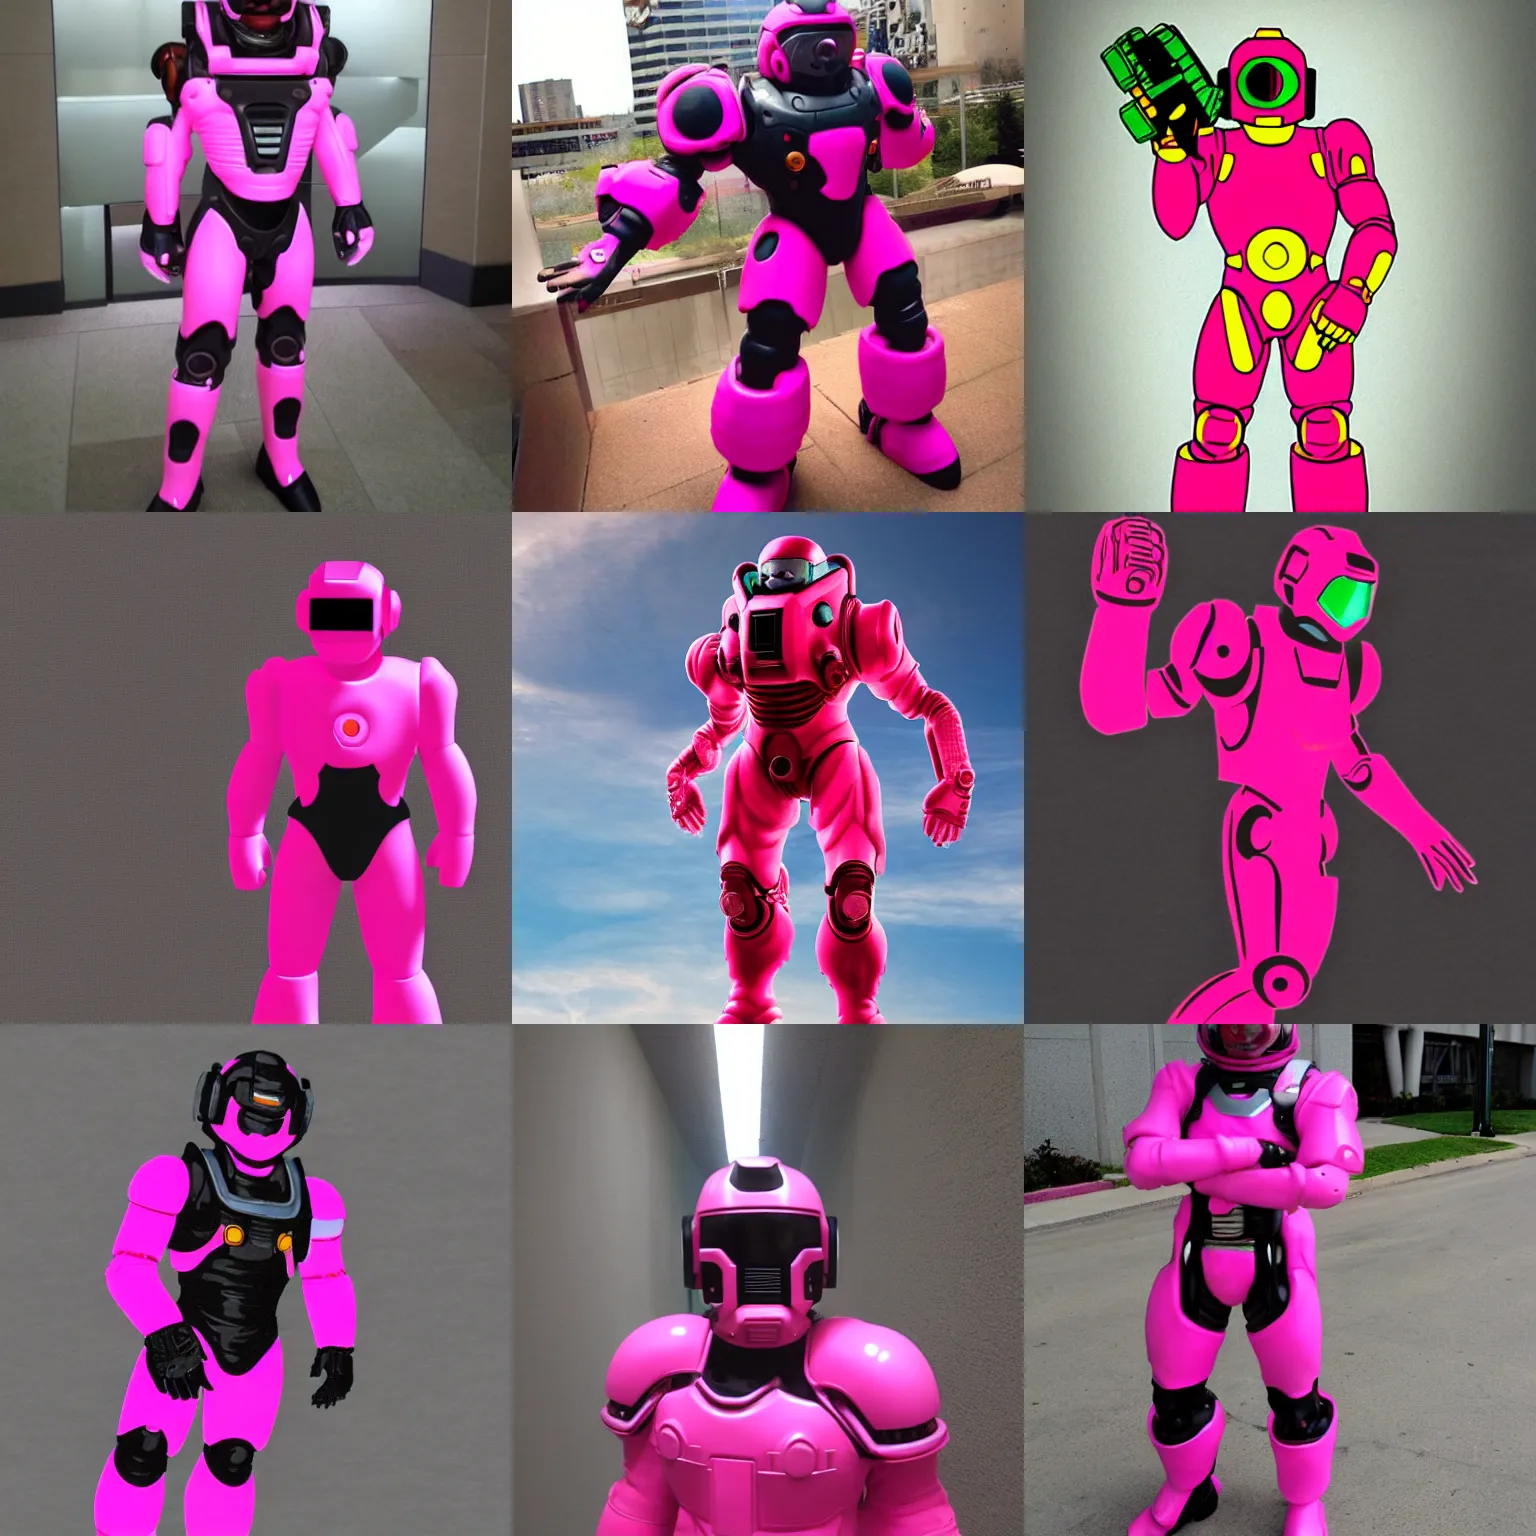 Prompt: DOOM guy in futuristic pink megaman suit